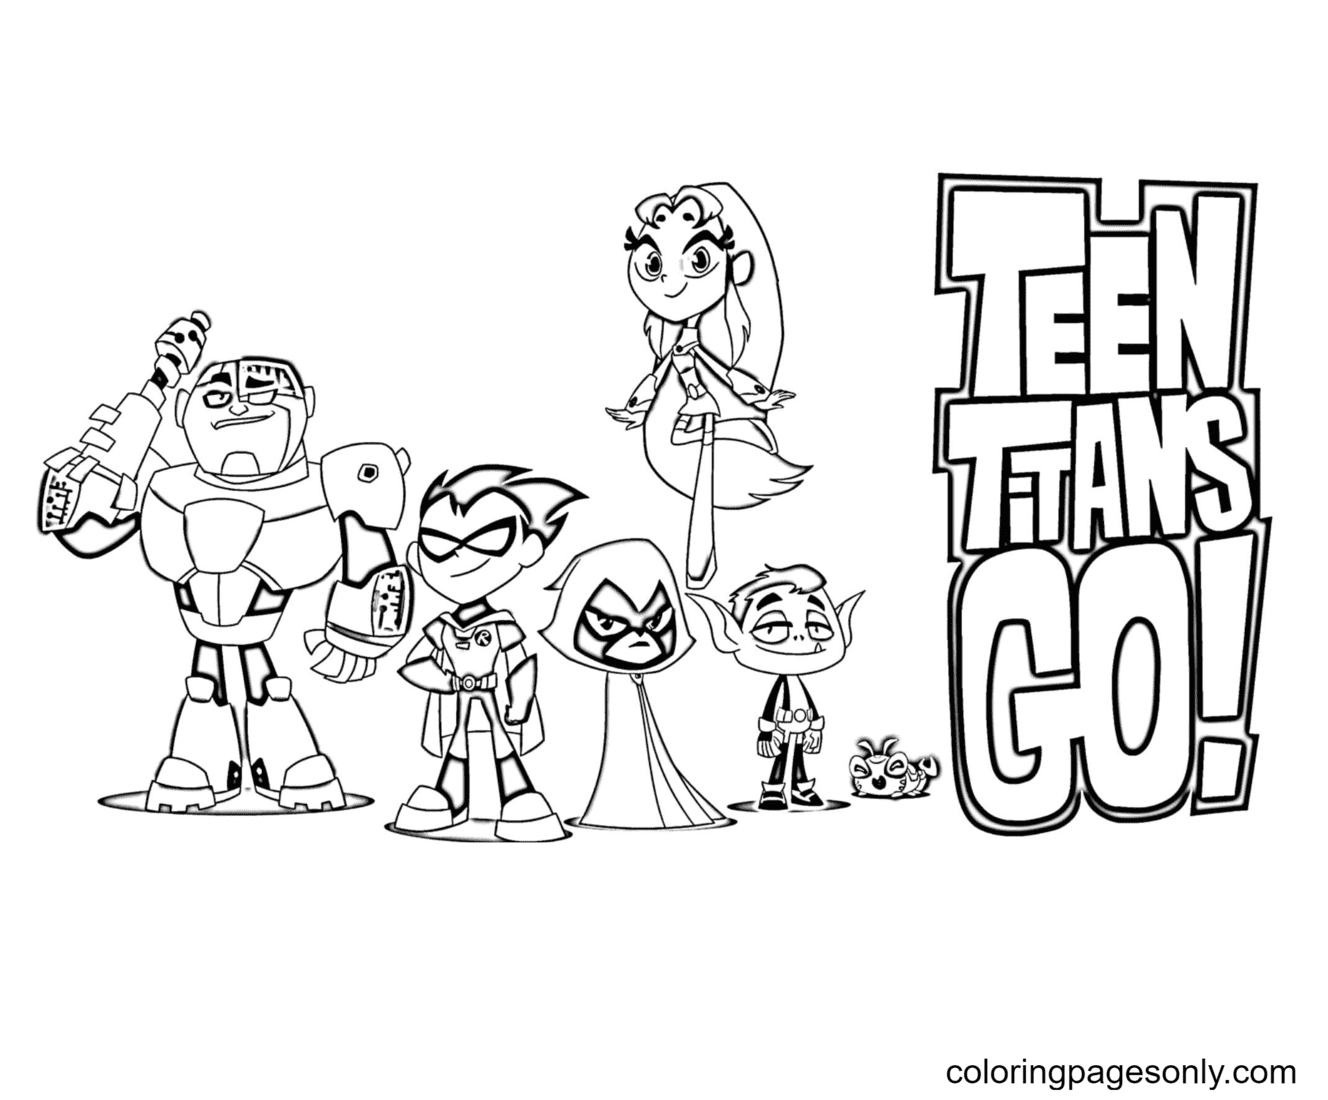 《少年泰坦 Go》卡通版可打印《少年泰坦 Go》